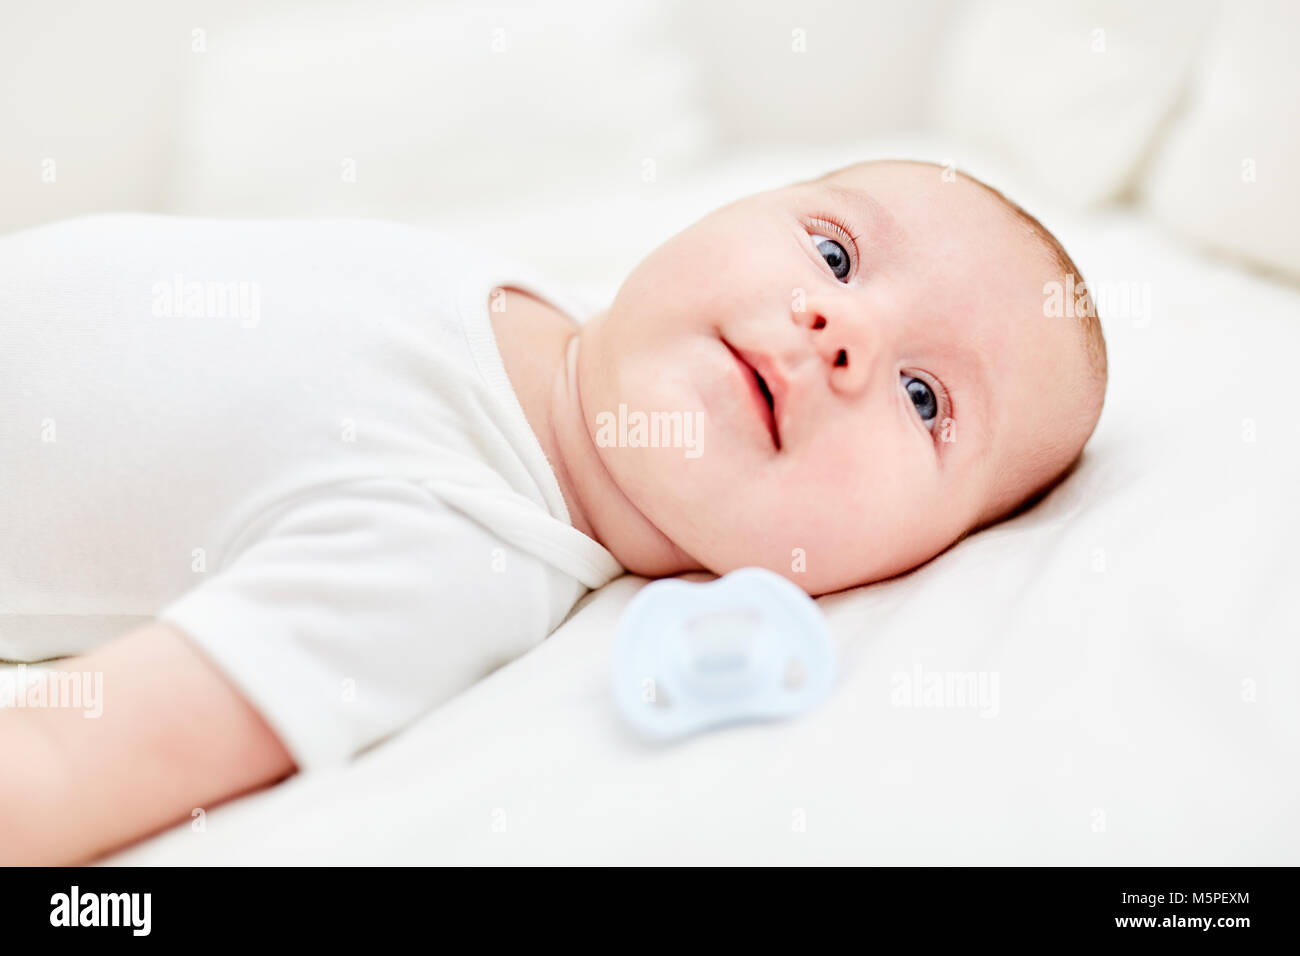 Bebé recién nacido yace sobre su espalda y parece curioso y alerta Foto de stock